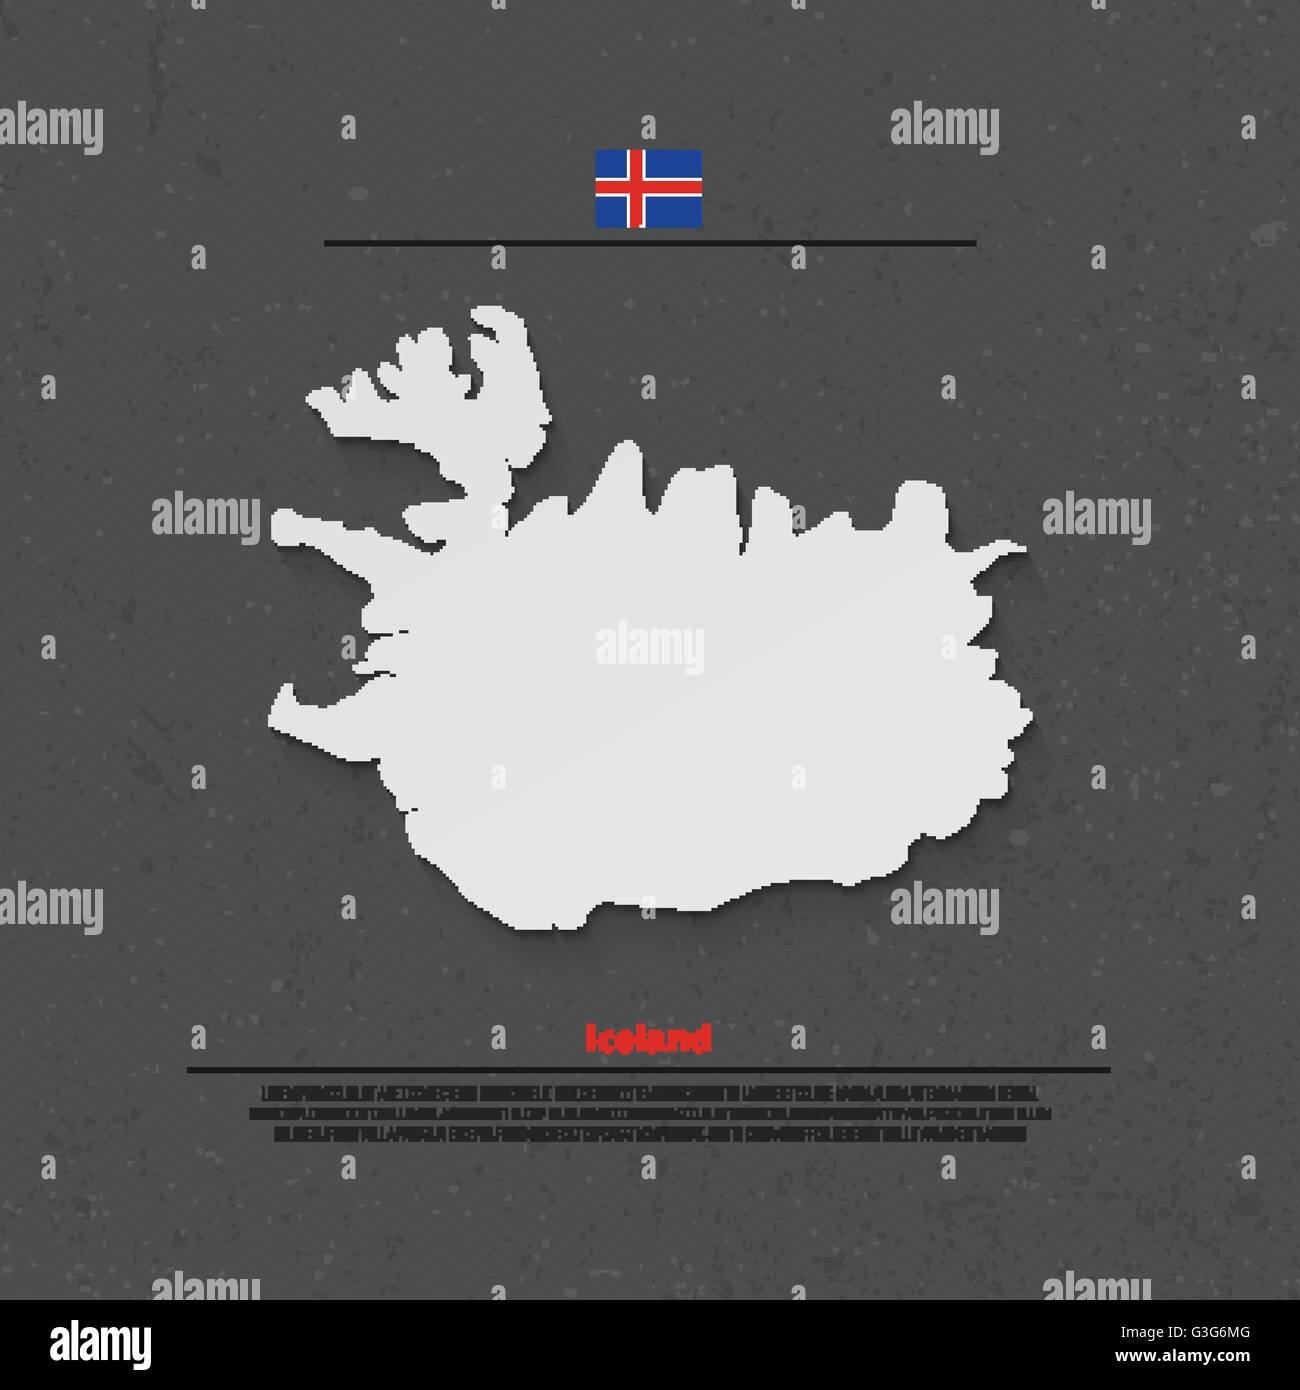 Republik Island isoliert Karte und offizielle Flaggen-Icons. Vektor-Island 3d Abbildung Abzeichen. Nordischen Insel-Staat, die geographische Stock Vektor